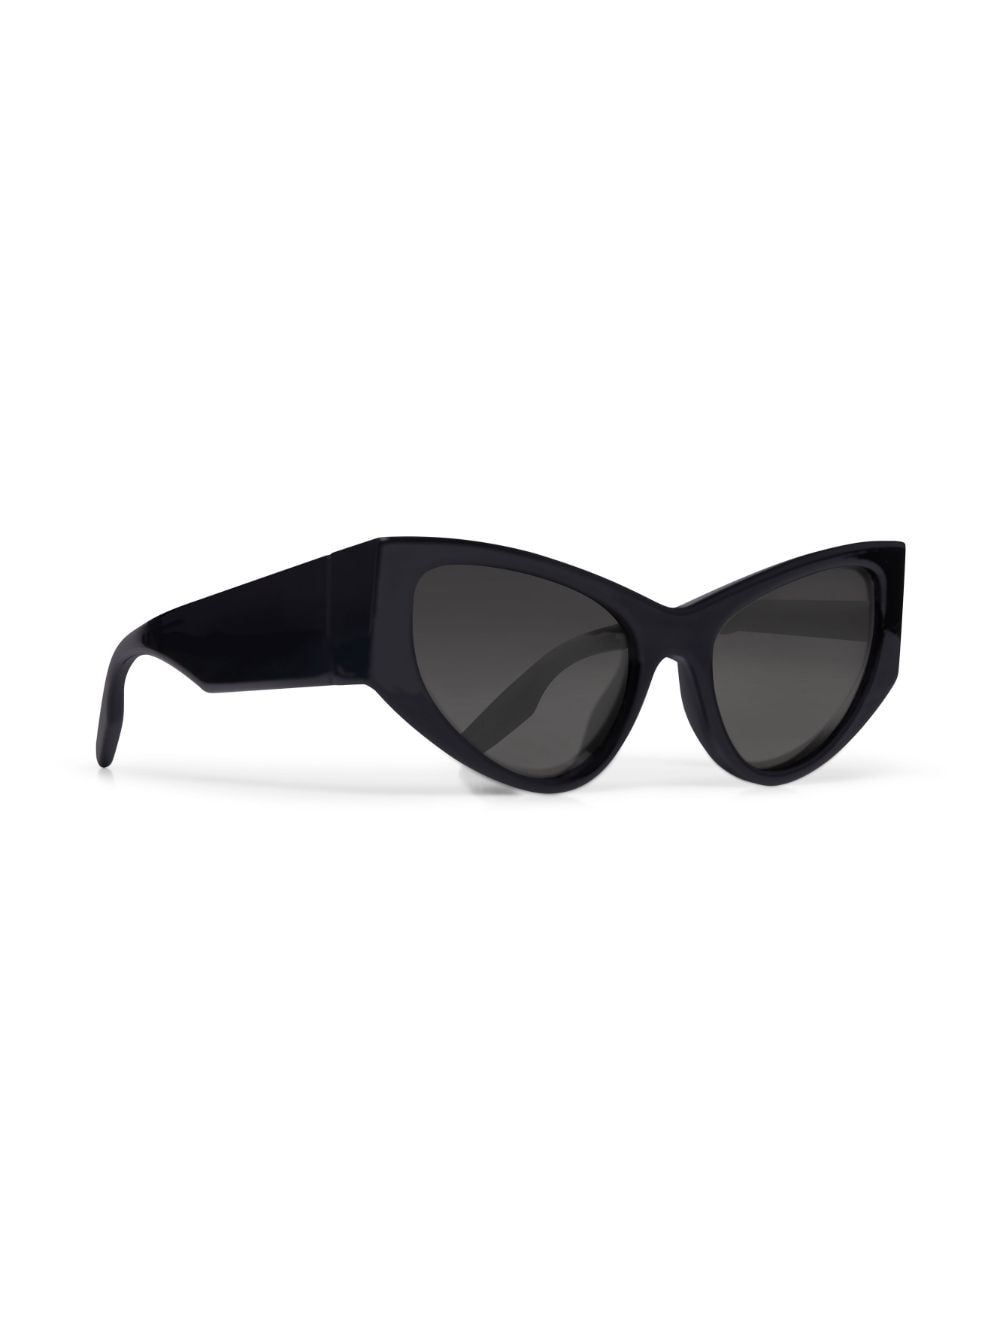 Balenciaga Eyewear Zonnebril met cat-eye montuur - Zwart